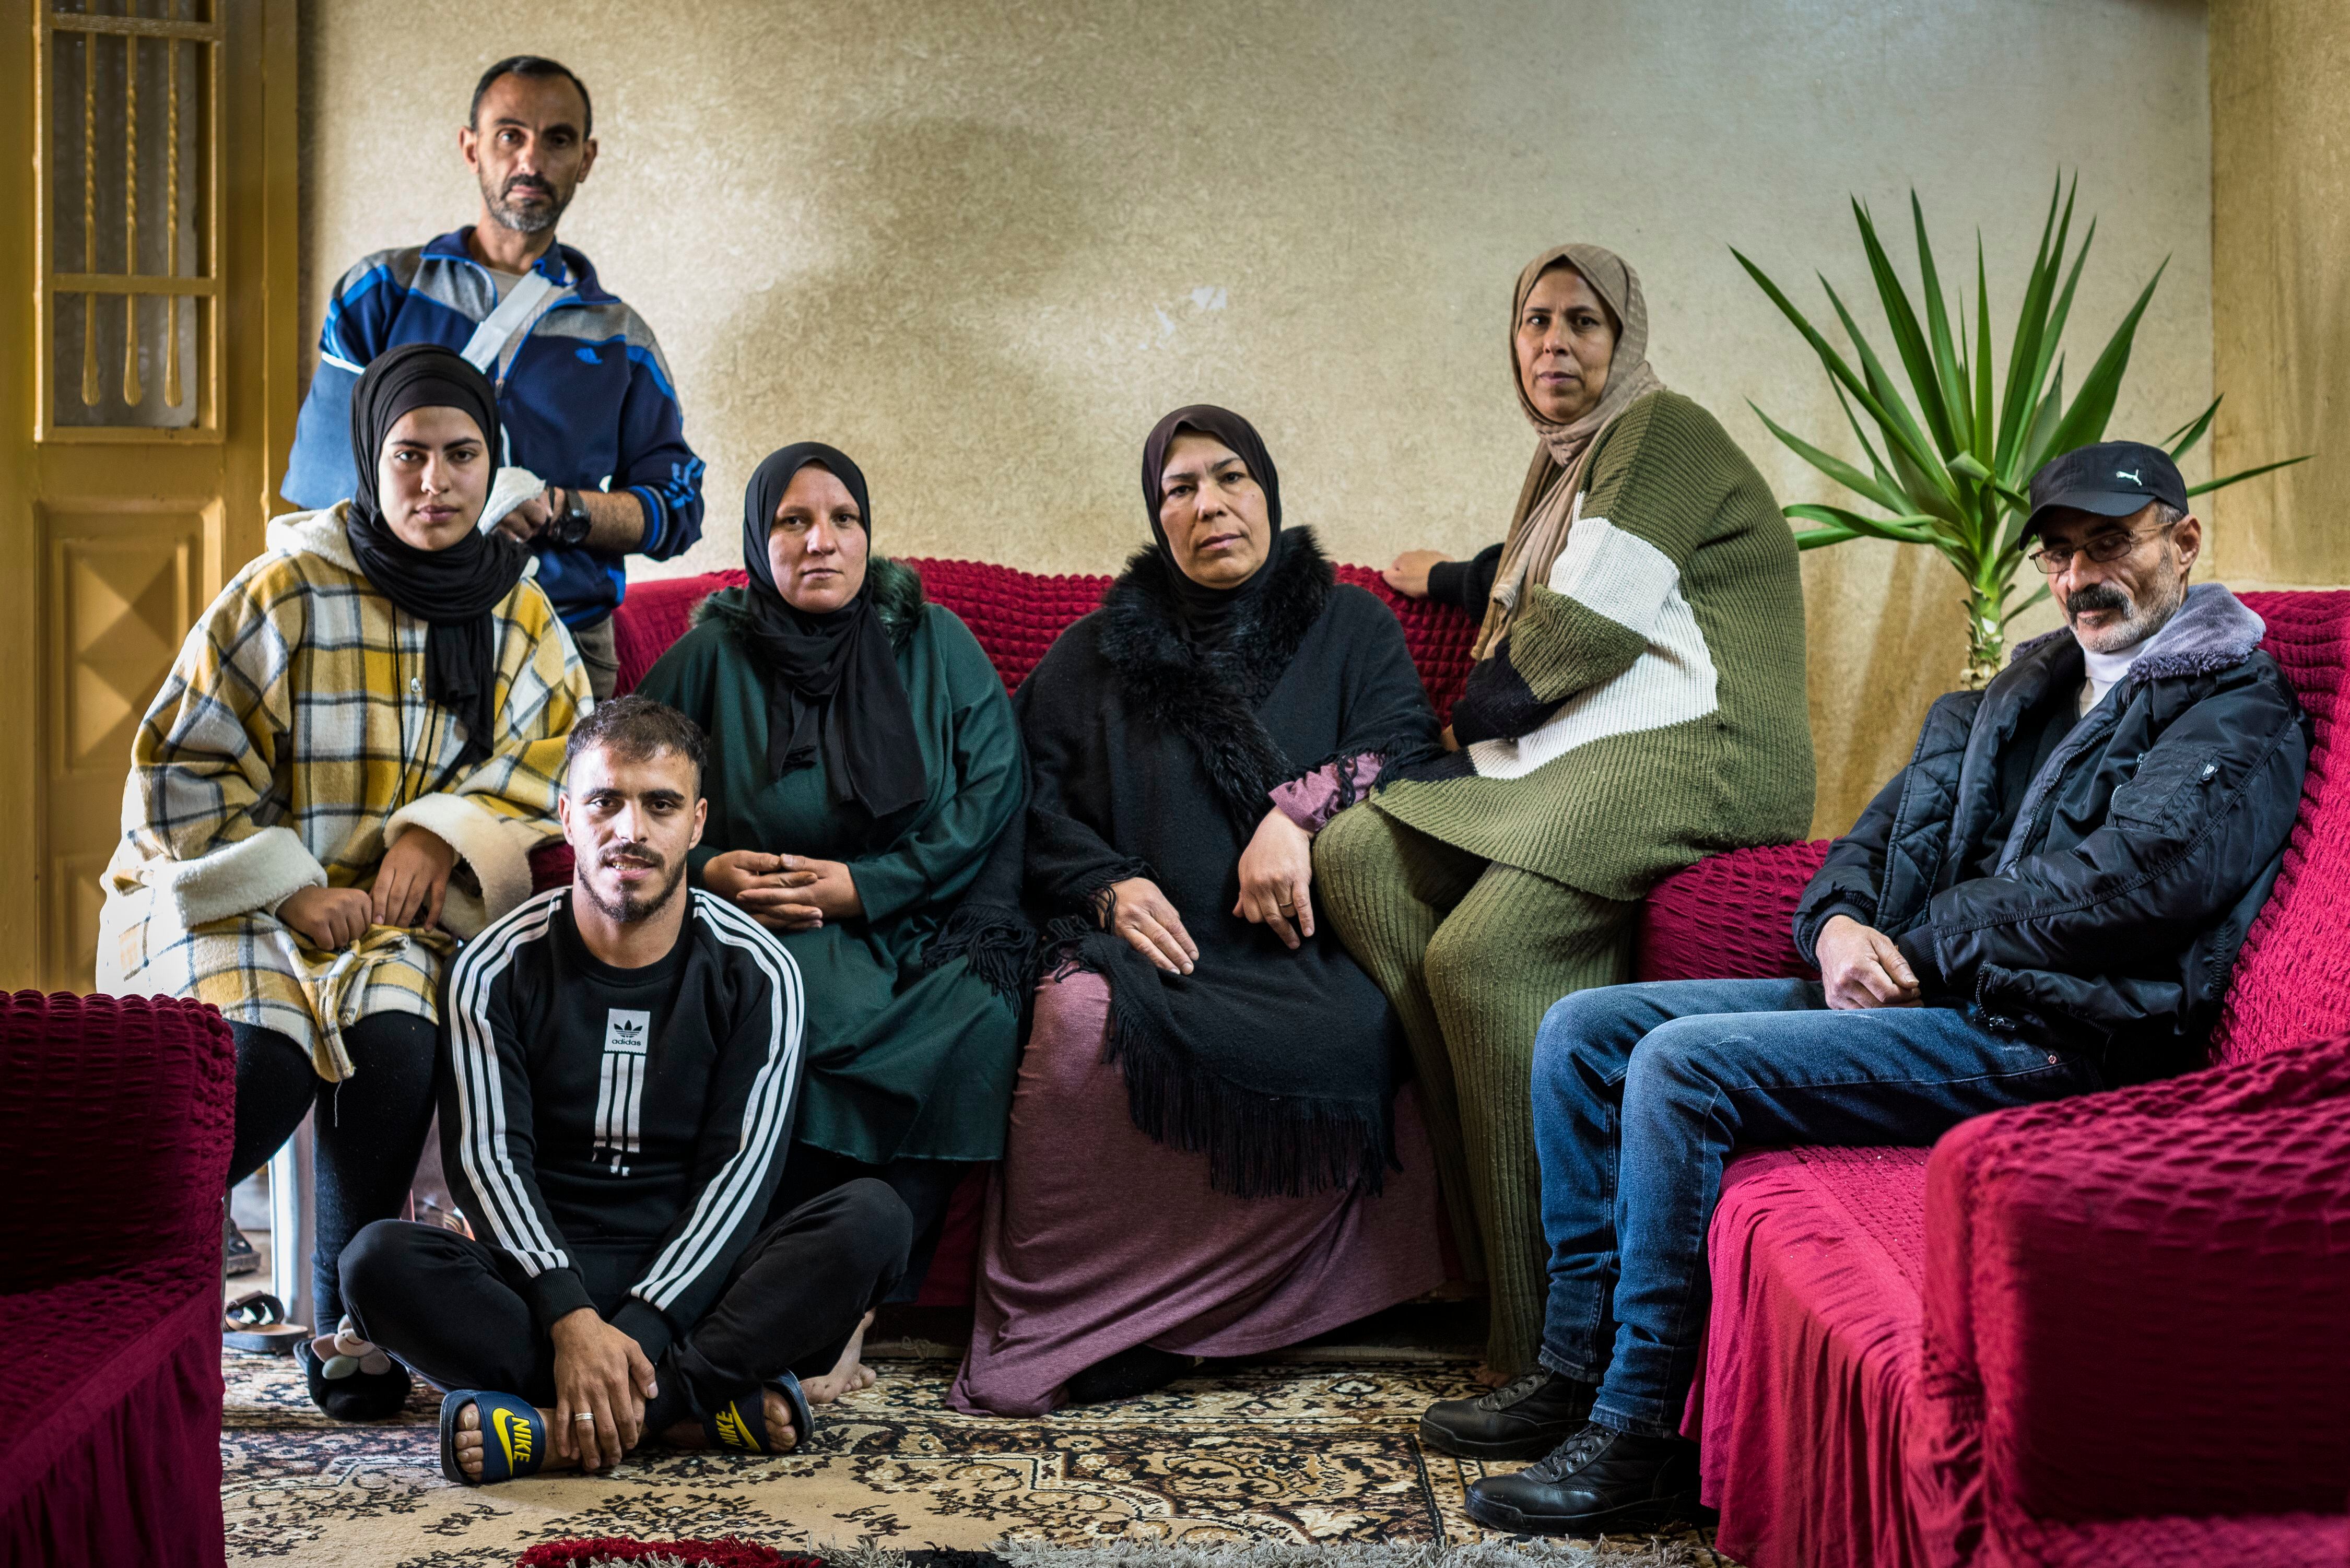 Randa Abu Sifan (de negro) con su familia en su casa en la zona H2, controlada por el ejército israelí. “Vivimos atemorizados y a todos nos afecta psicológicamente”, dice.